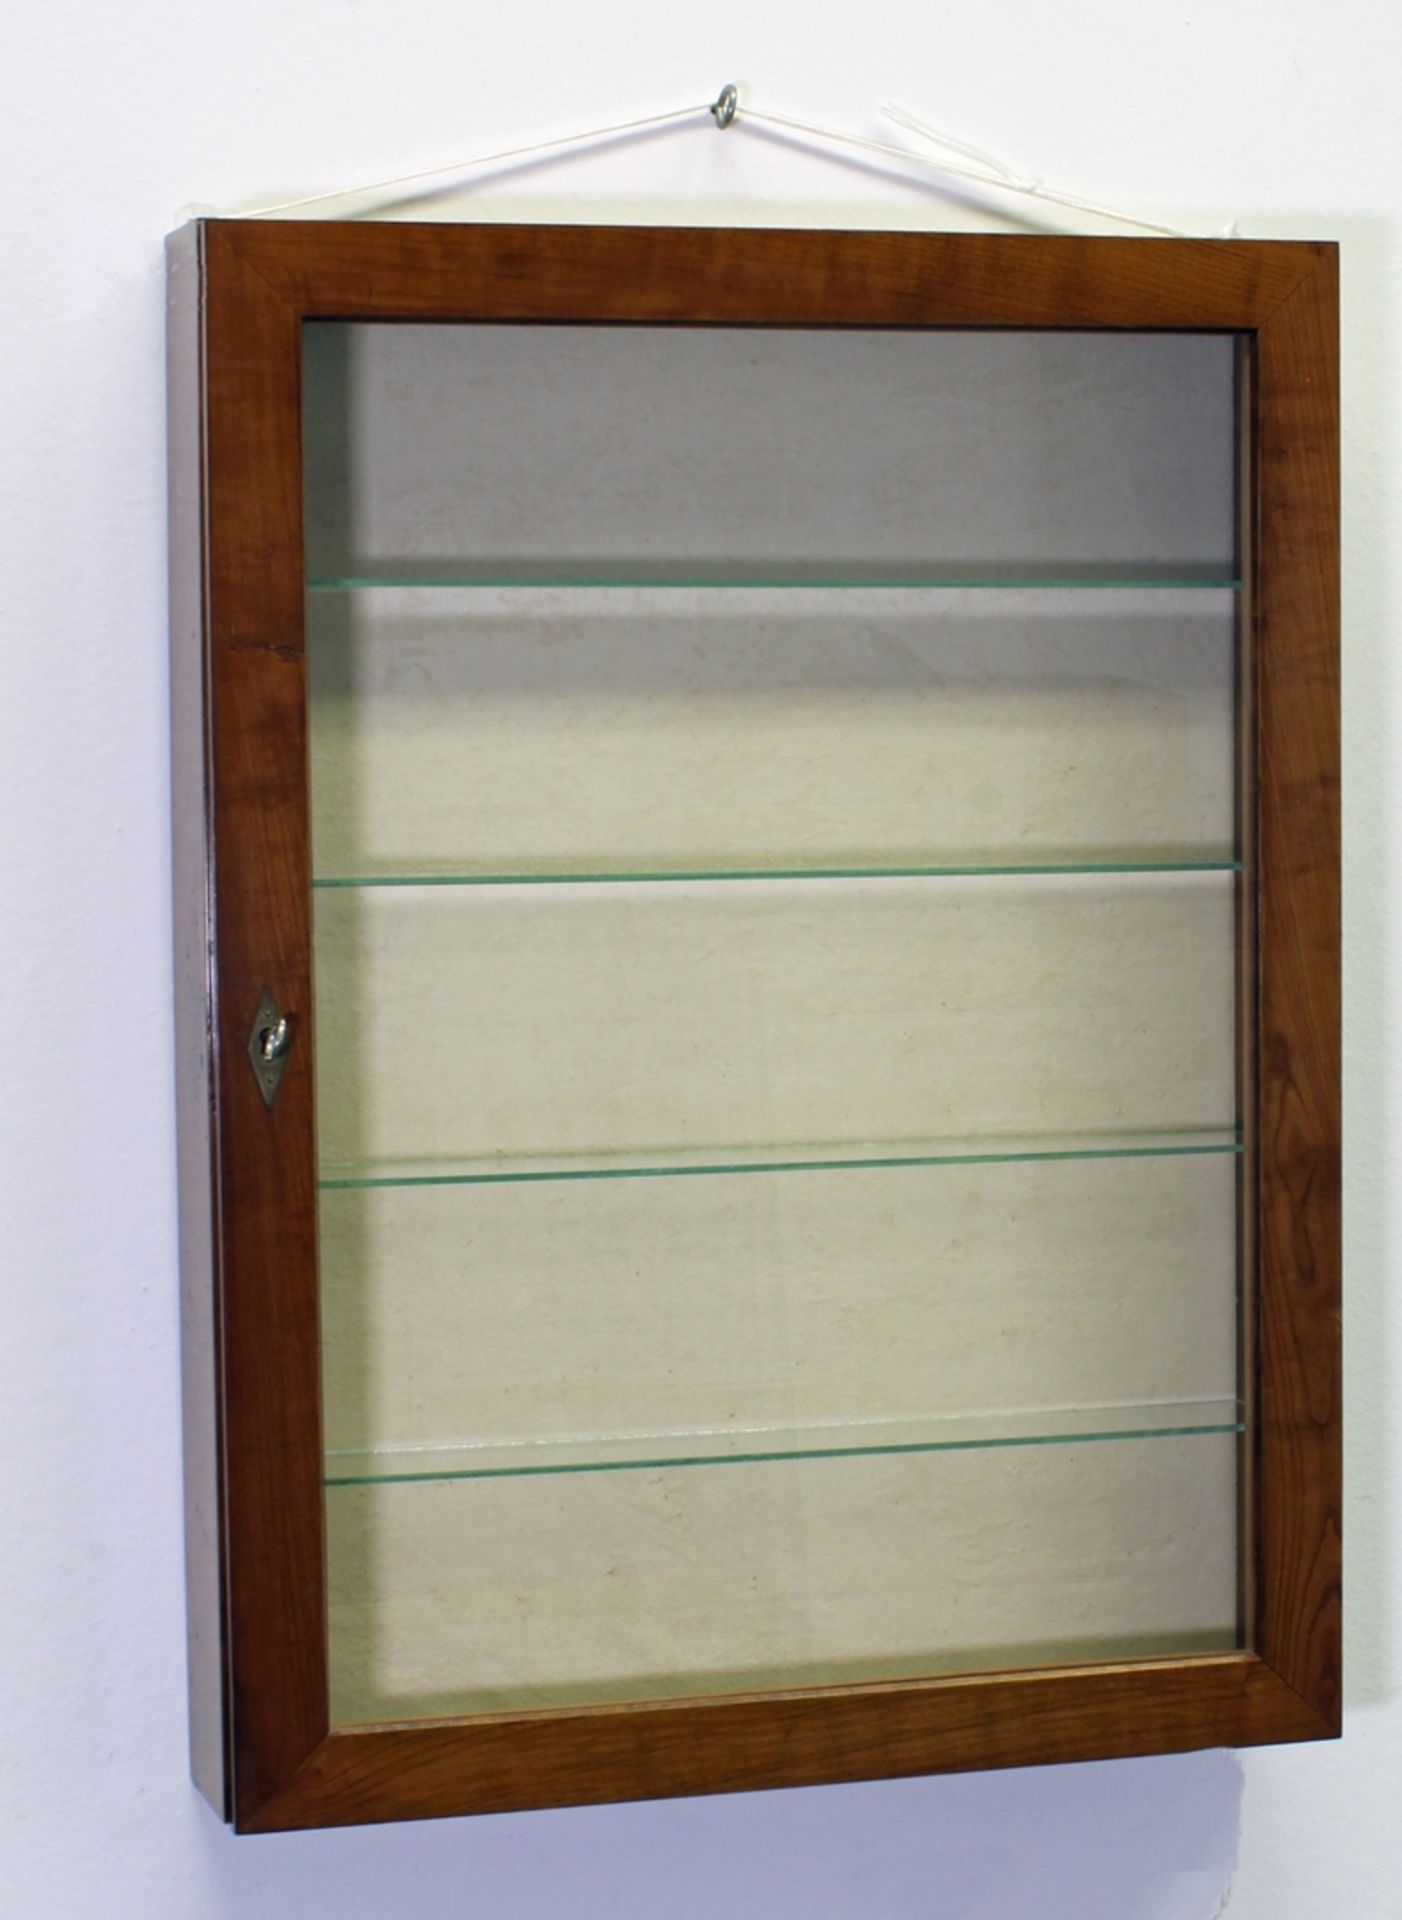 Hängevitrine, 19. Jh., mahagonifarben, Tür verglast, vier gläserne Einlegeböden, 80 x 60 x 12 cm, r